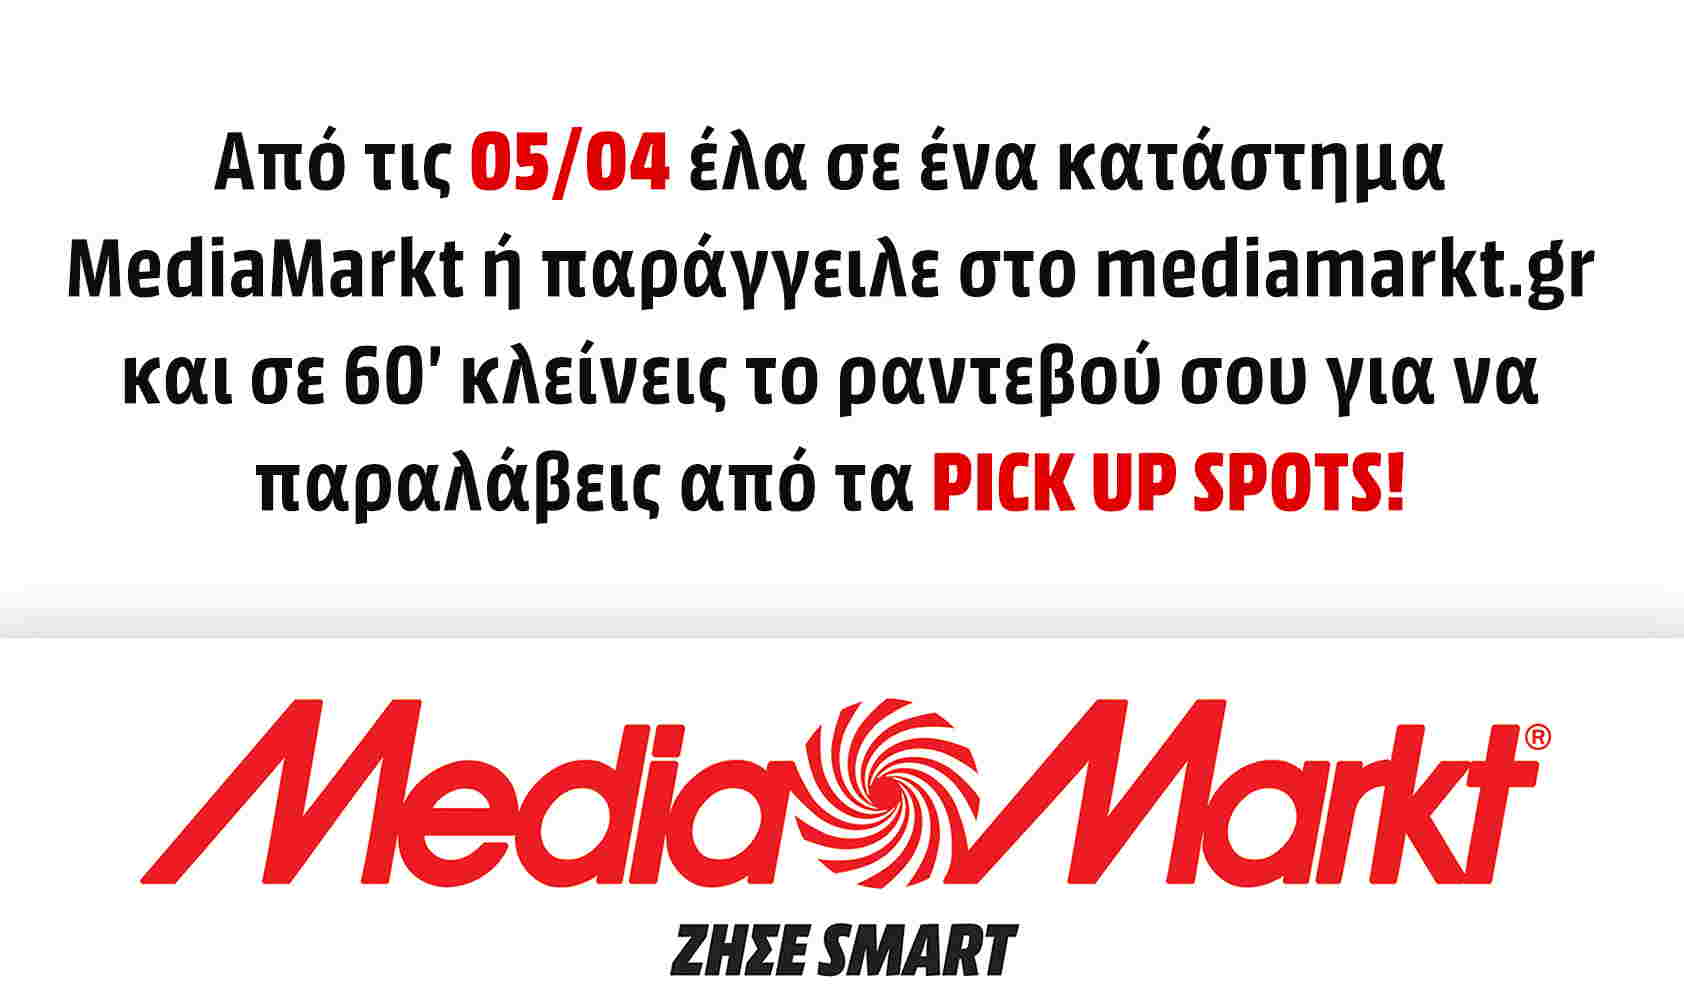 Τα καταστήματα MediaMarkt άνοιξαν με click inside και click away